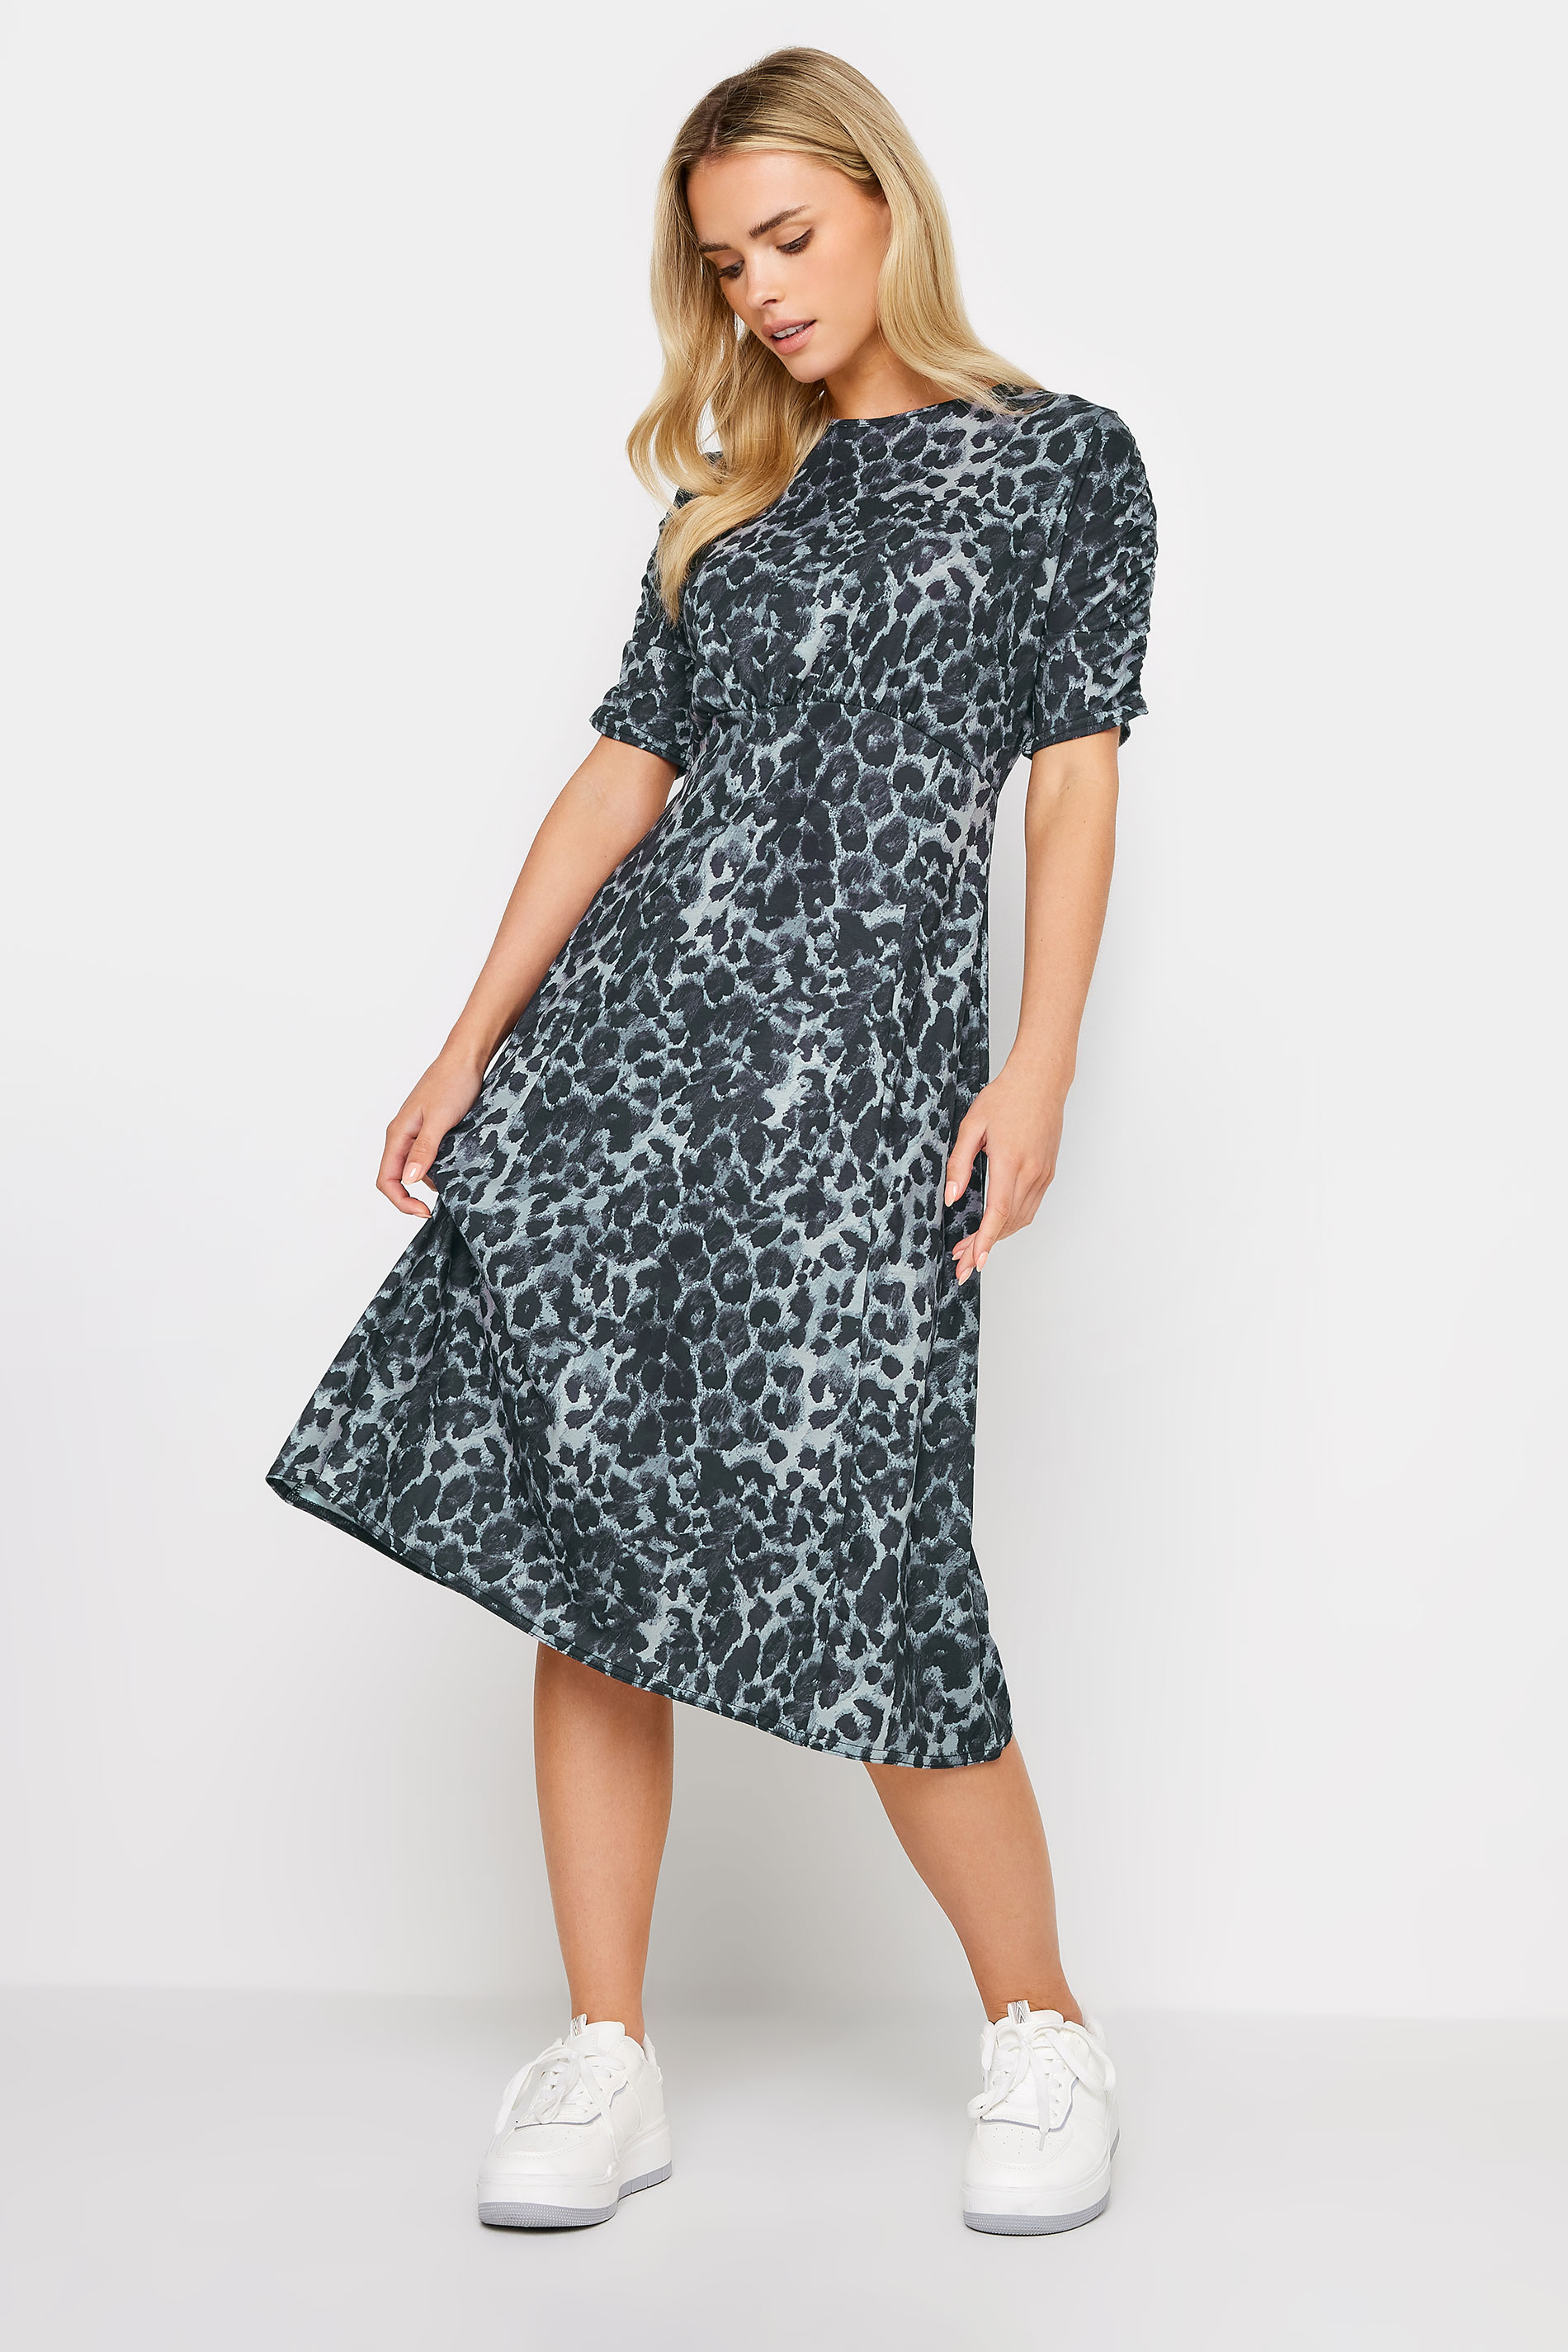 PixieGirl Grey Leopard Print Midi Dress | PixieGirl  2